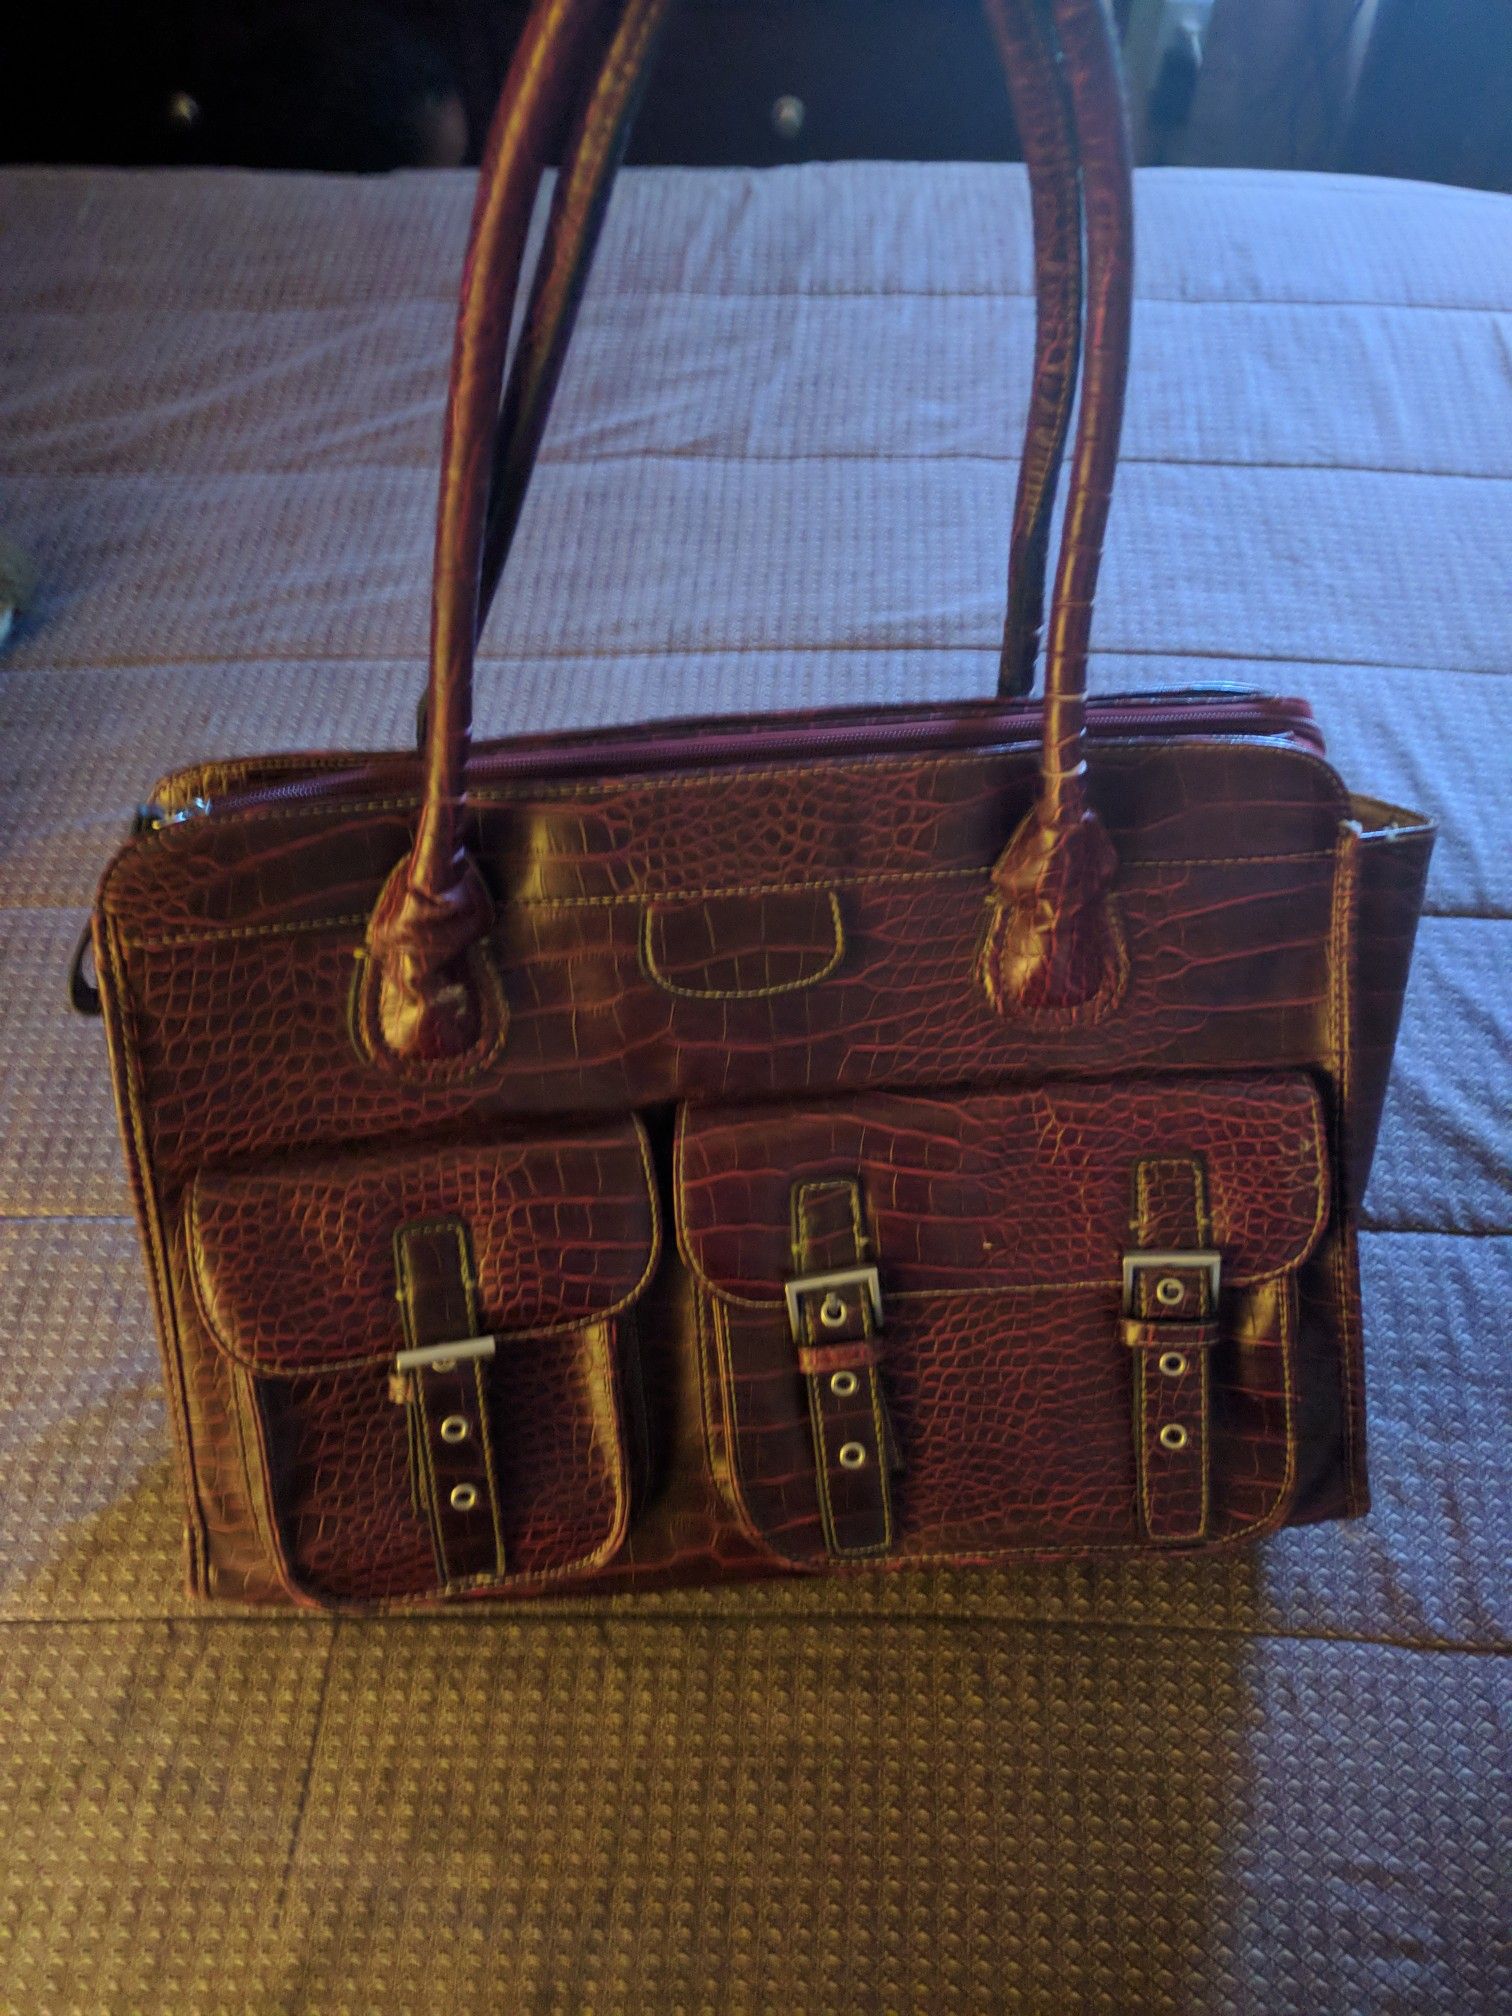 Executive Bag